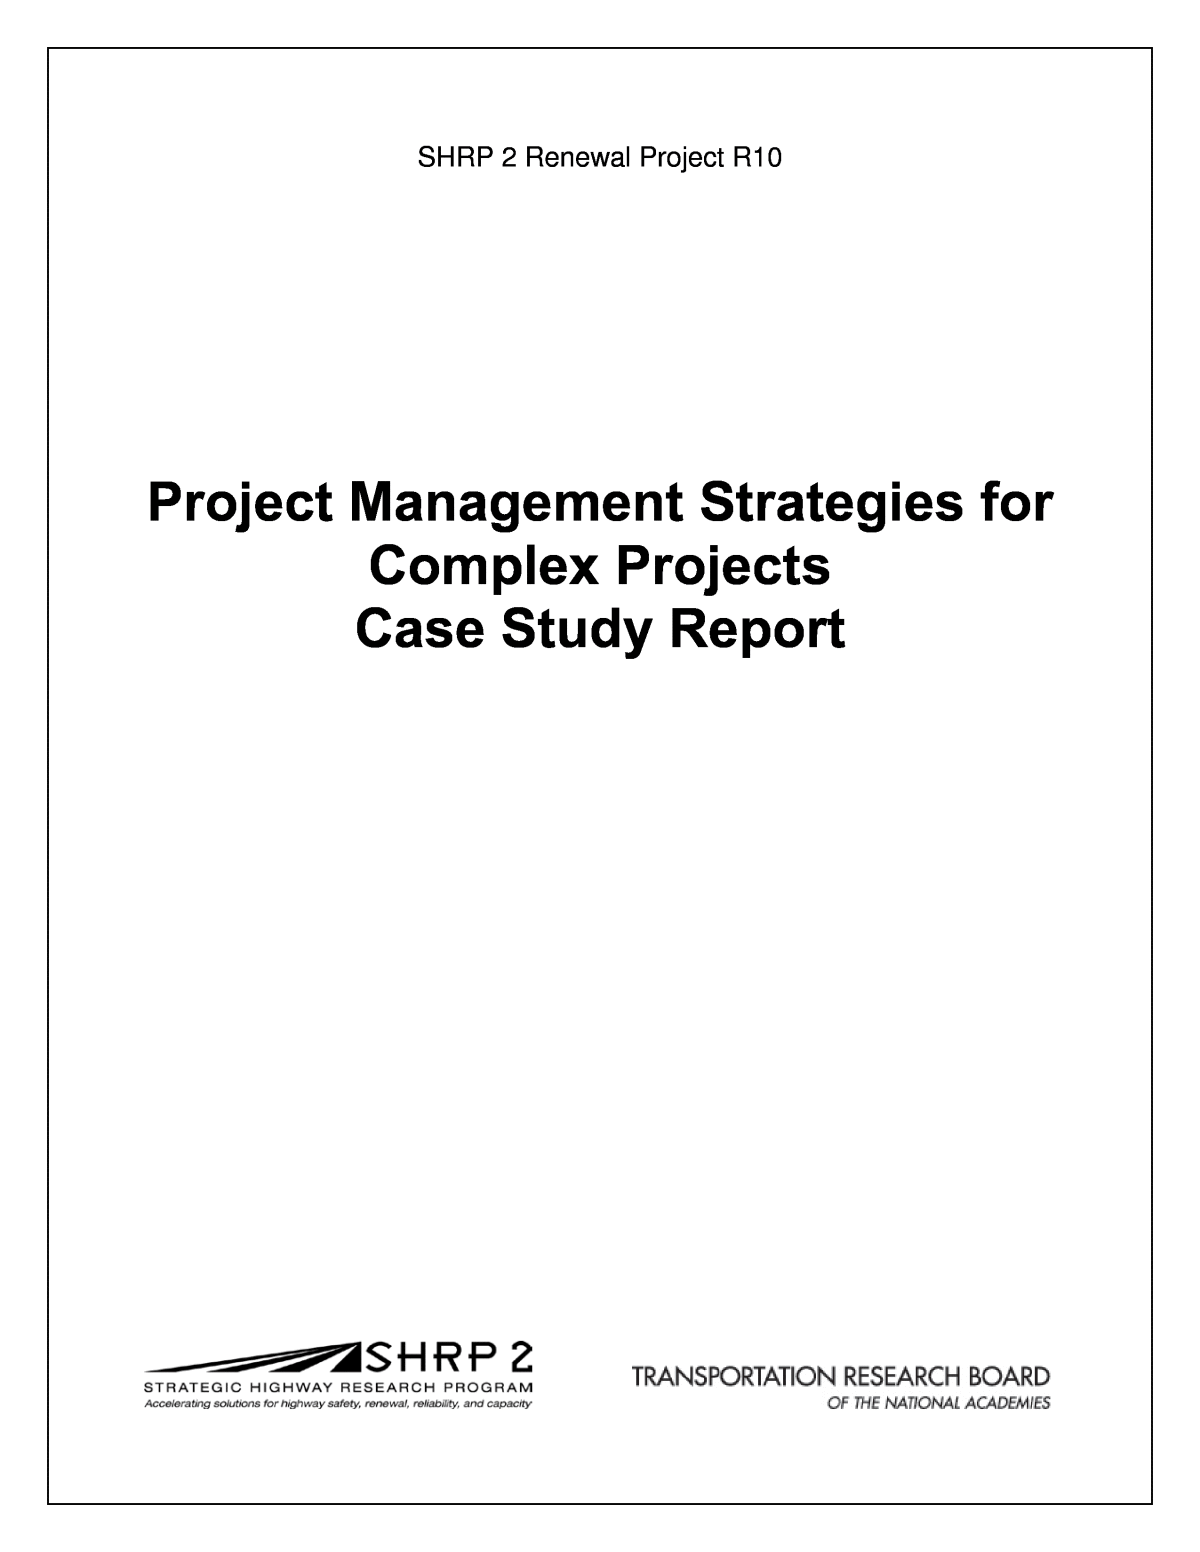 project management case study report pdf